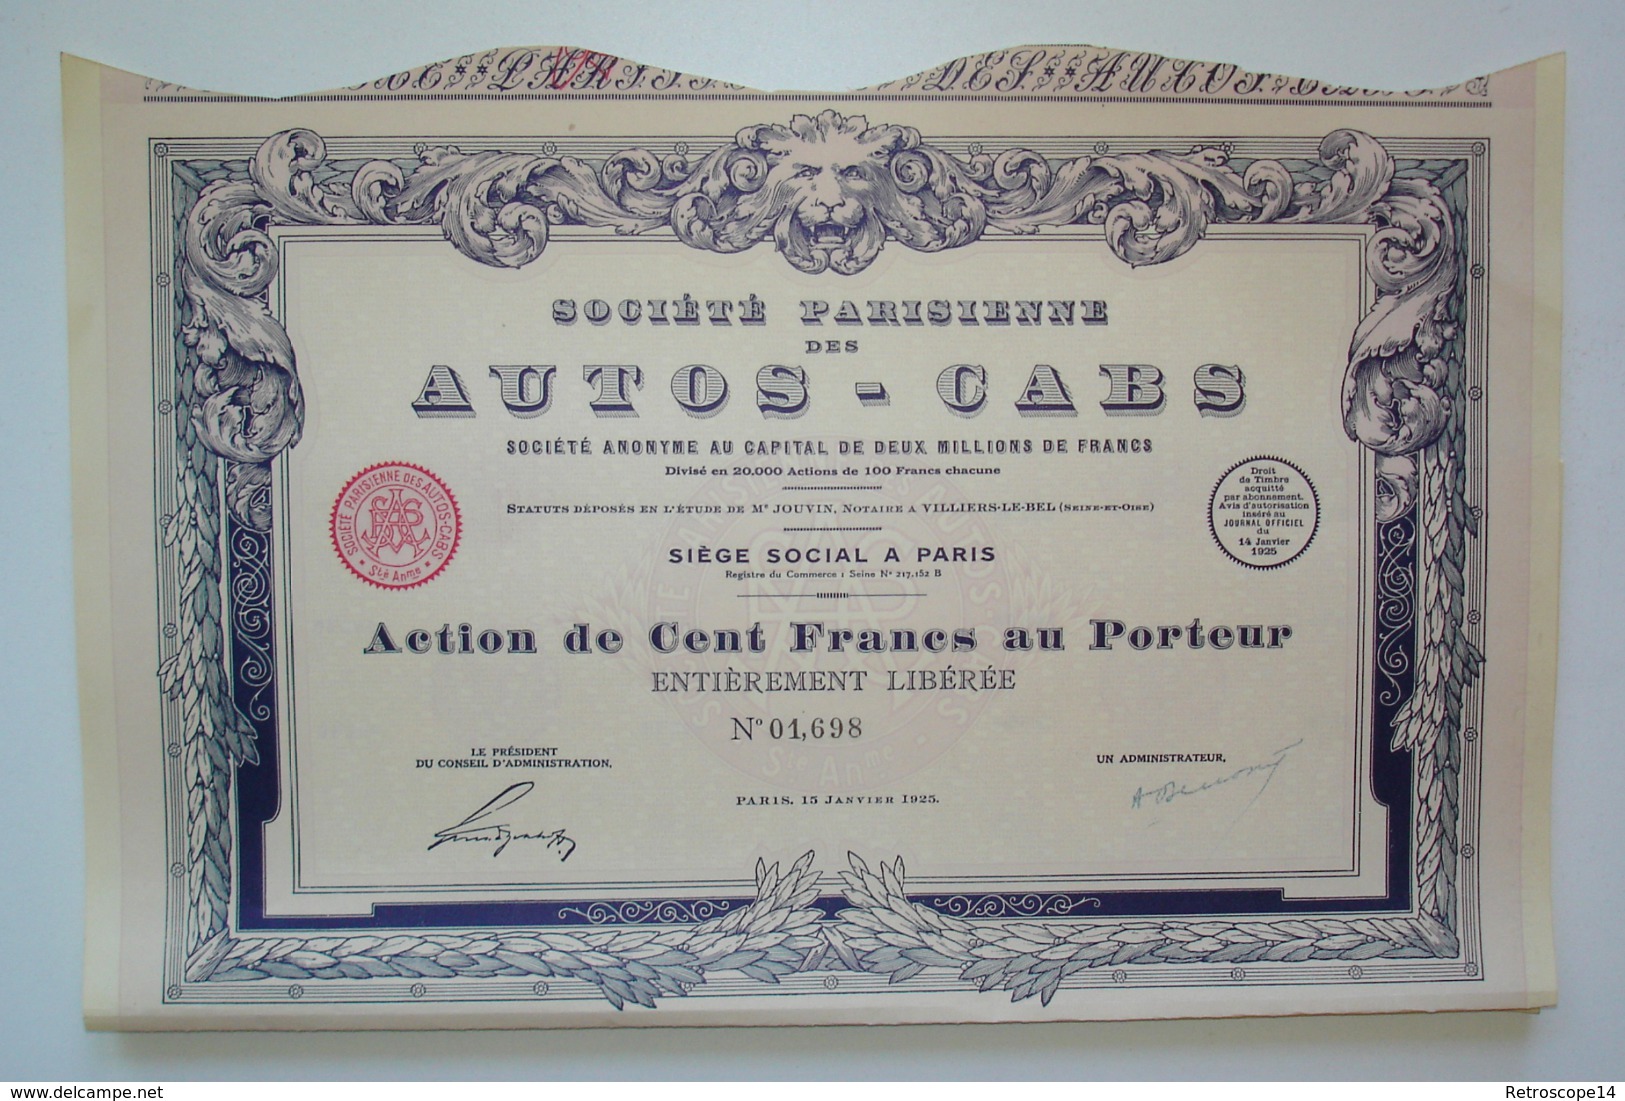 RARE. 1925. SOCIÉTÉ DES AUTOS-CABS Avec Coupons. ART DÉCO. - Auto's